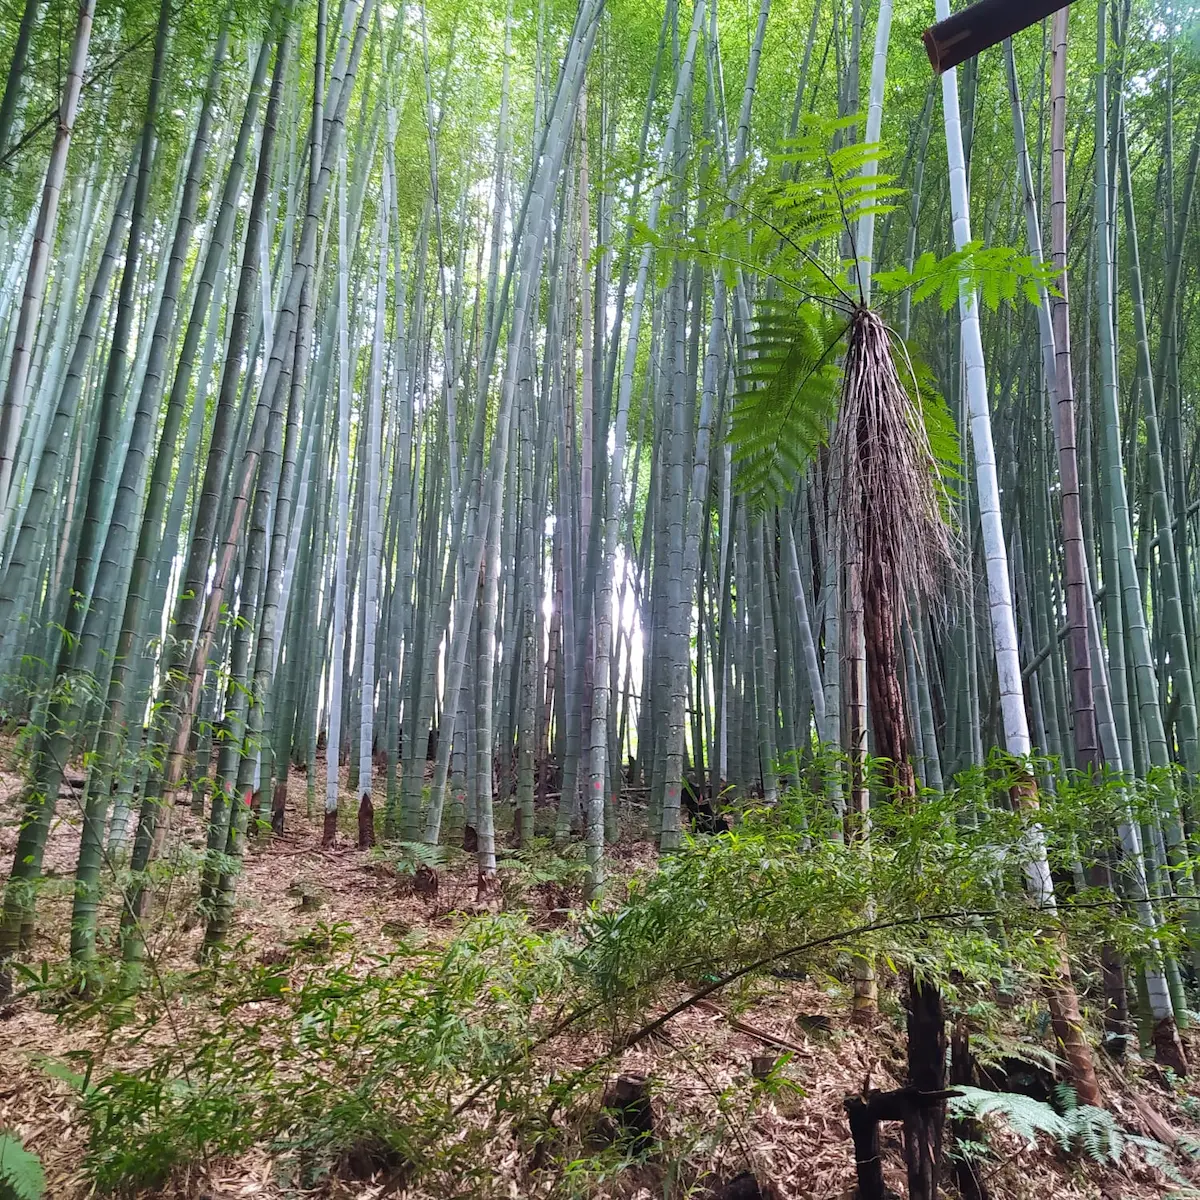 Bambu agroecologia bioconstrução - agricultura familiar - conexão agro